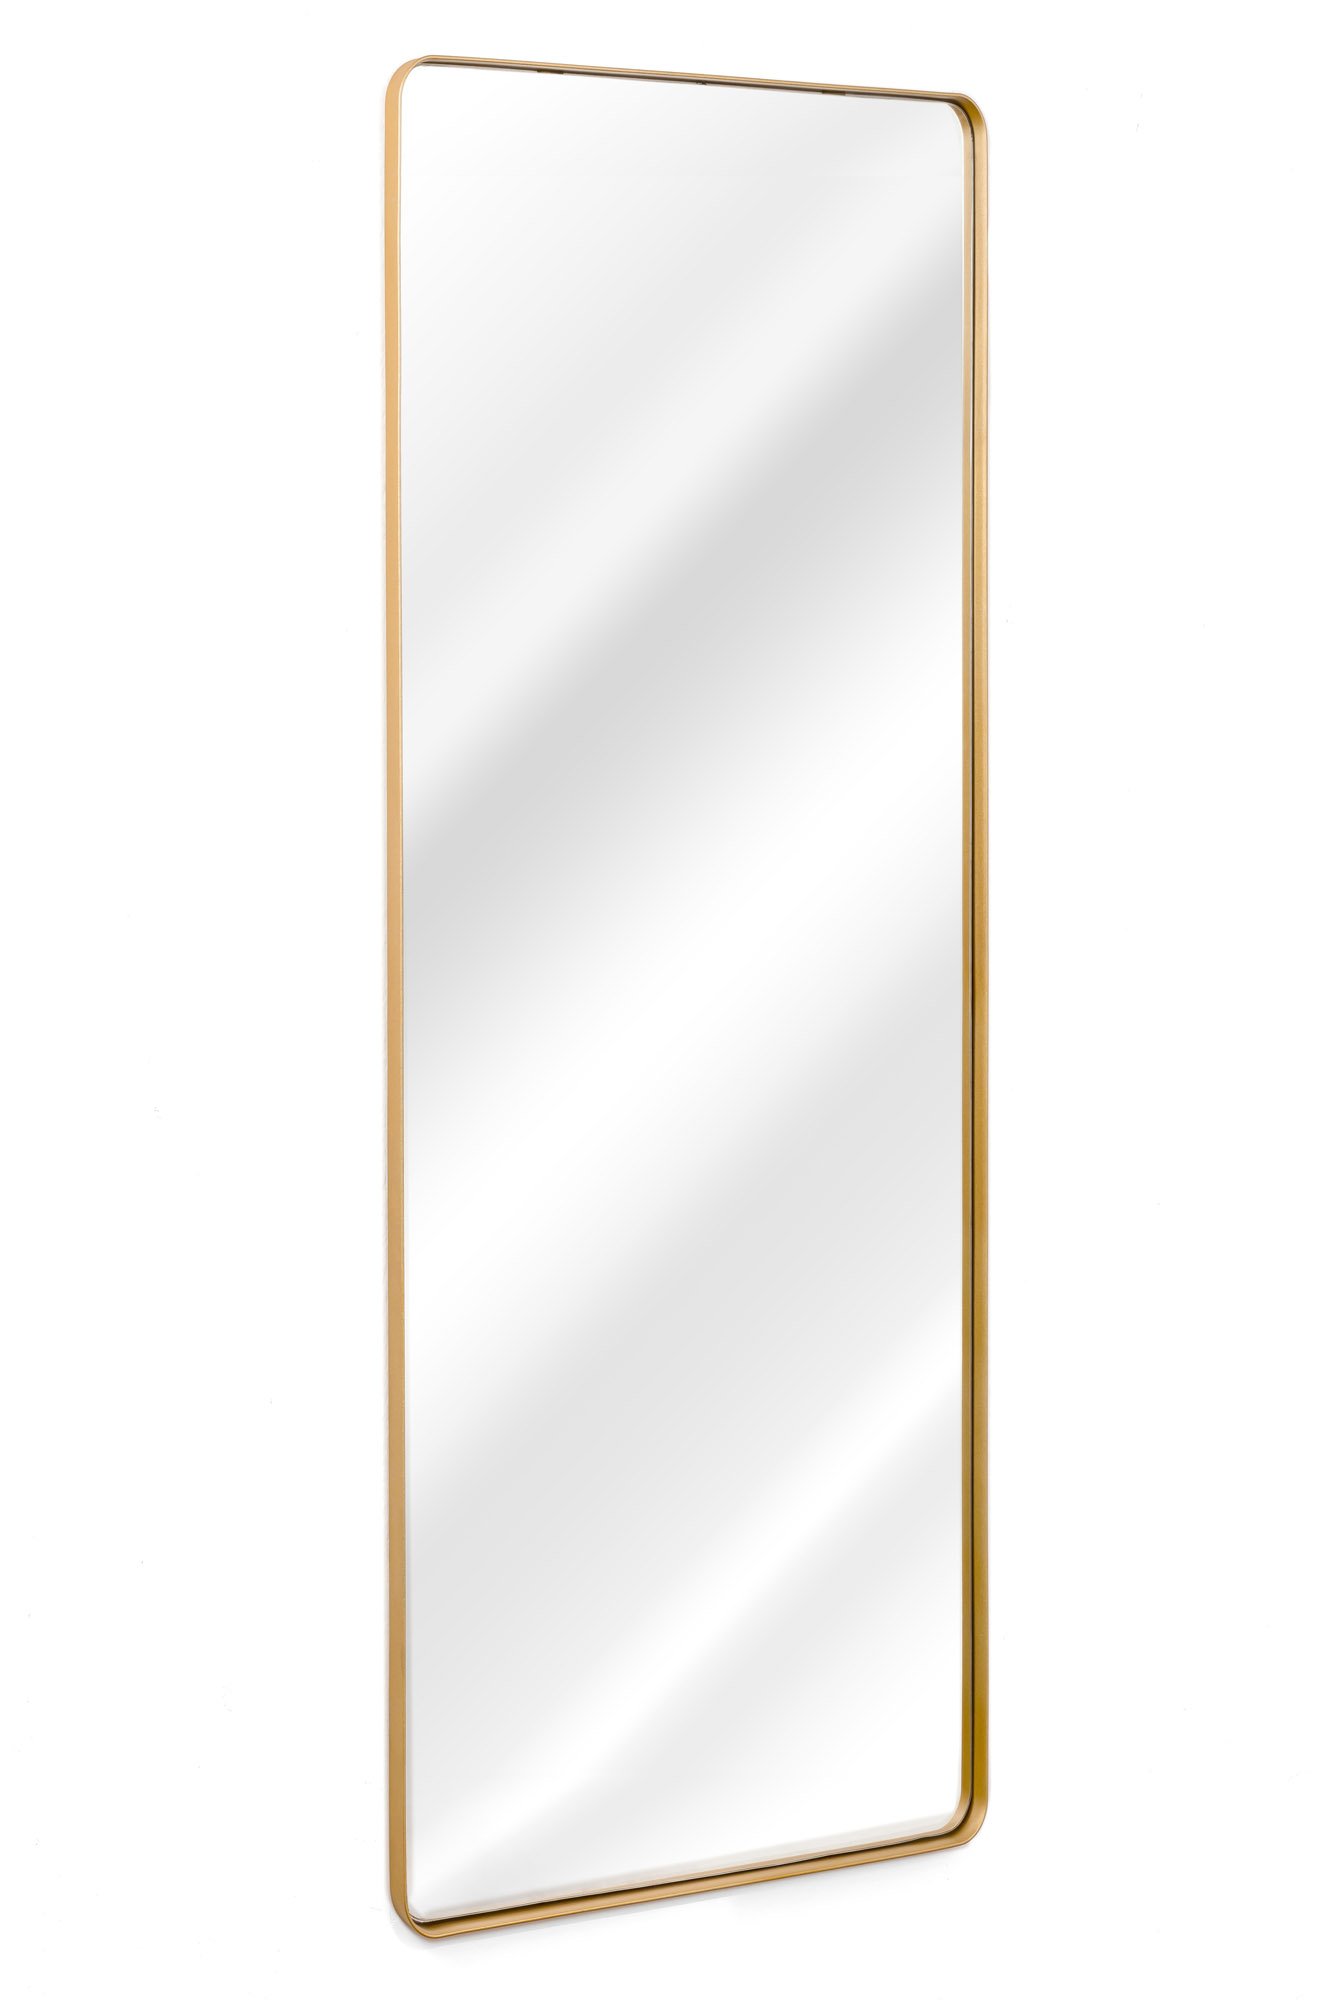 Espelho Grande Retangular Com Moldura Em Metal Industrial 150 x 60 Cm - Dourado - 4